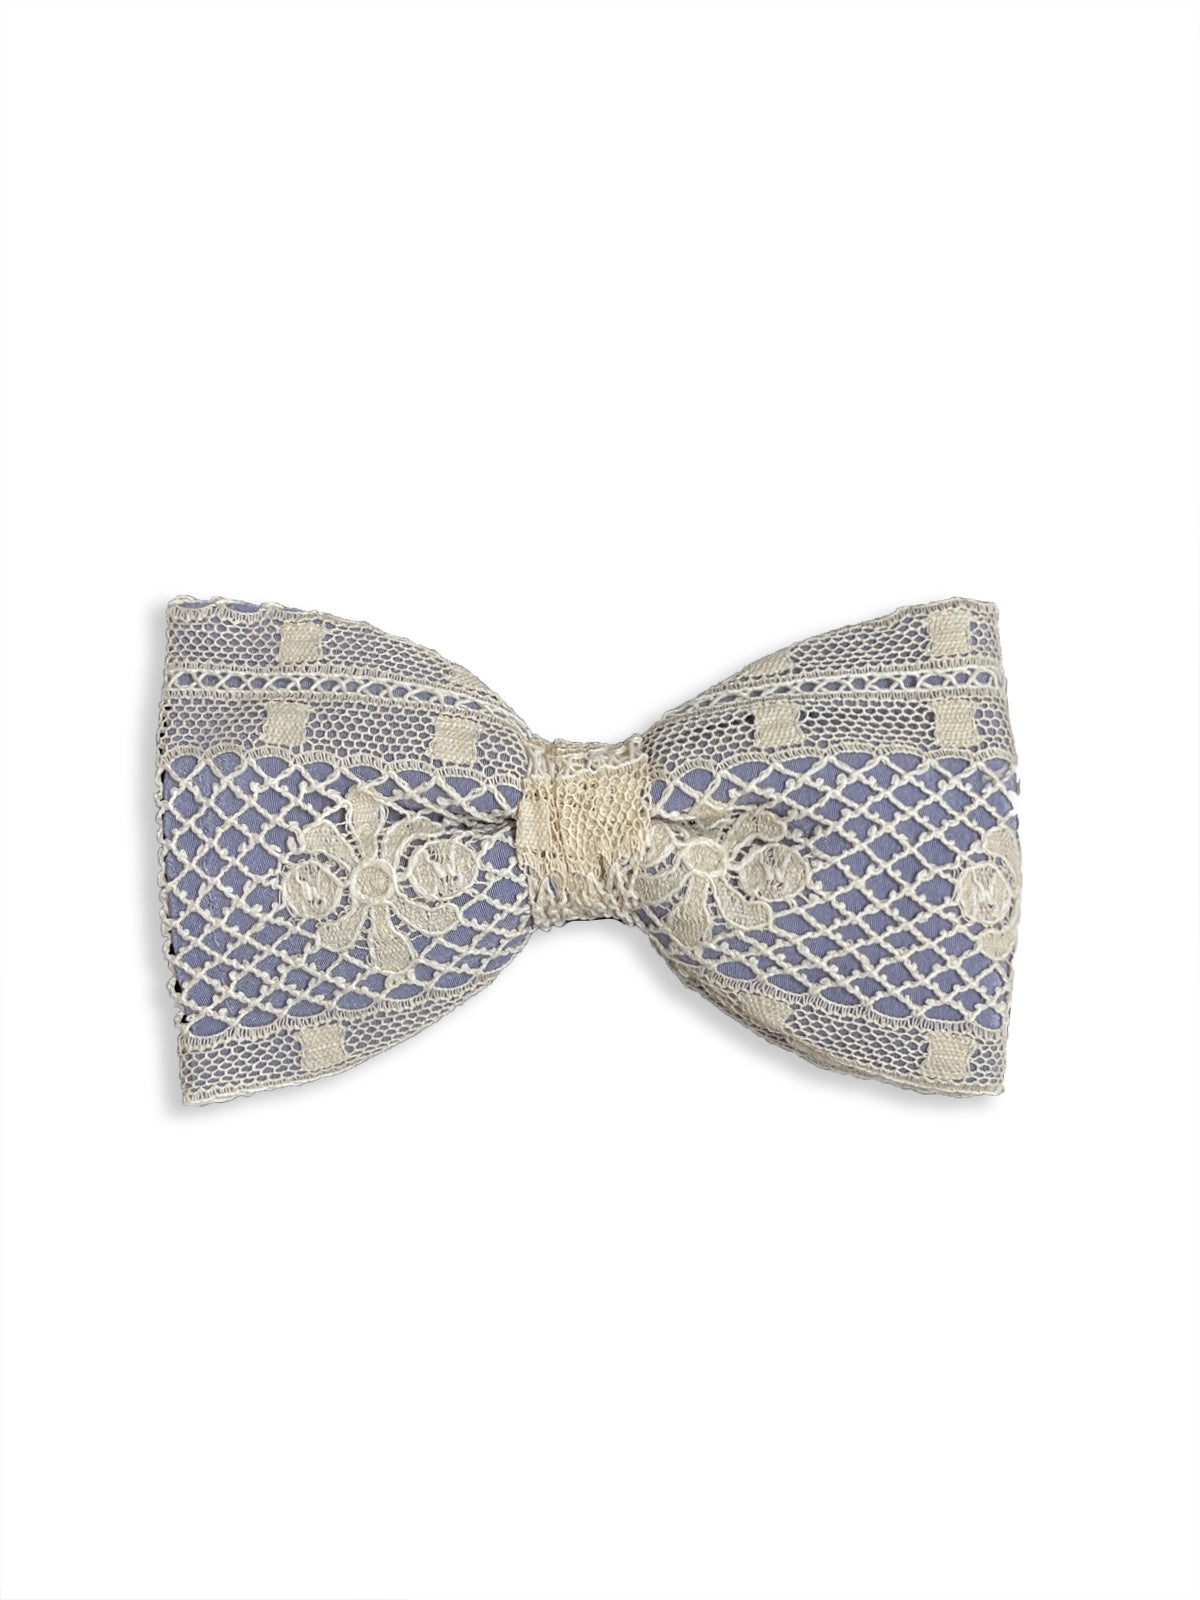 Ecru & Blue Crochet Bow tie